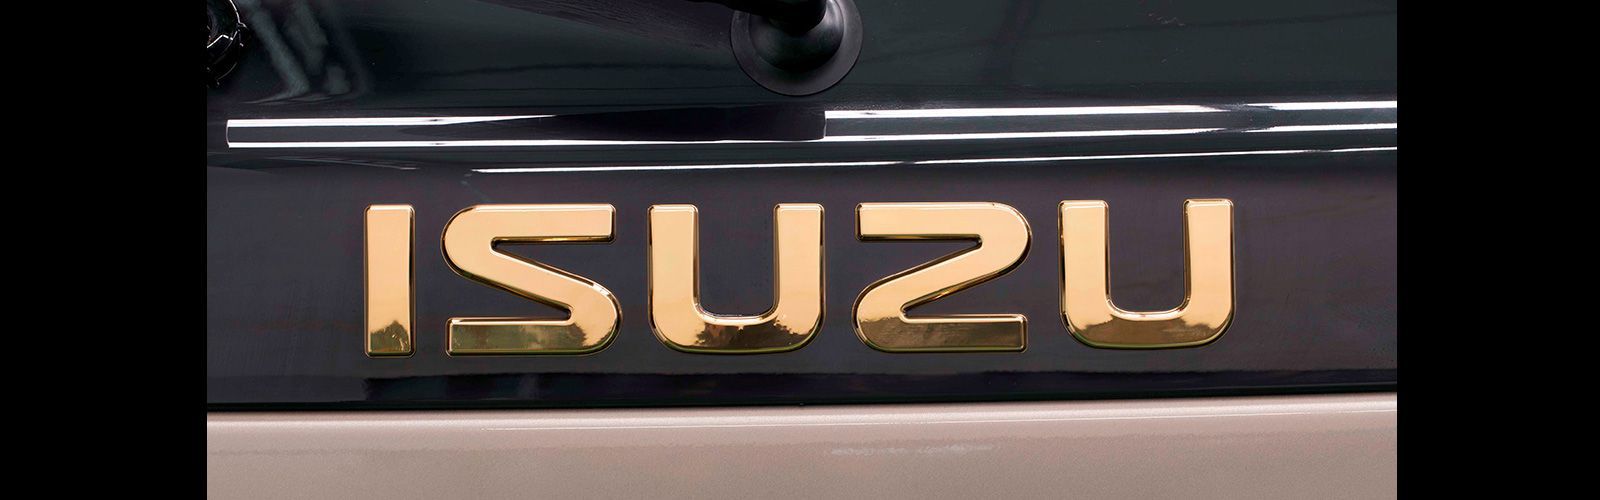 Isuzu Motors Ltd một trong những thương hiệu ô tô nổi tiếng thế giới đến từ Nhật Bản